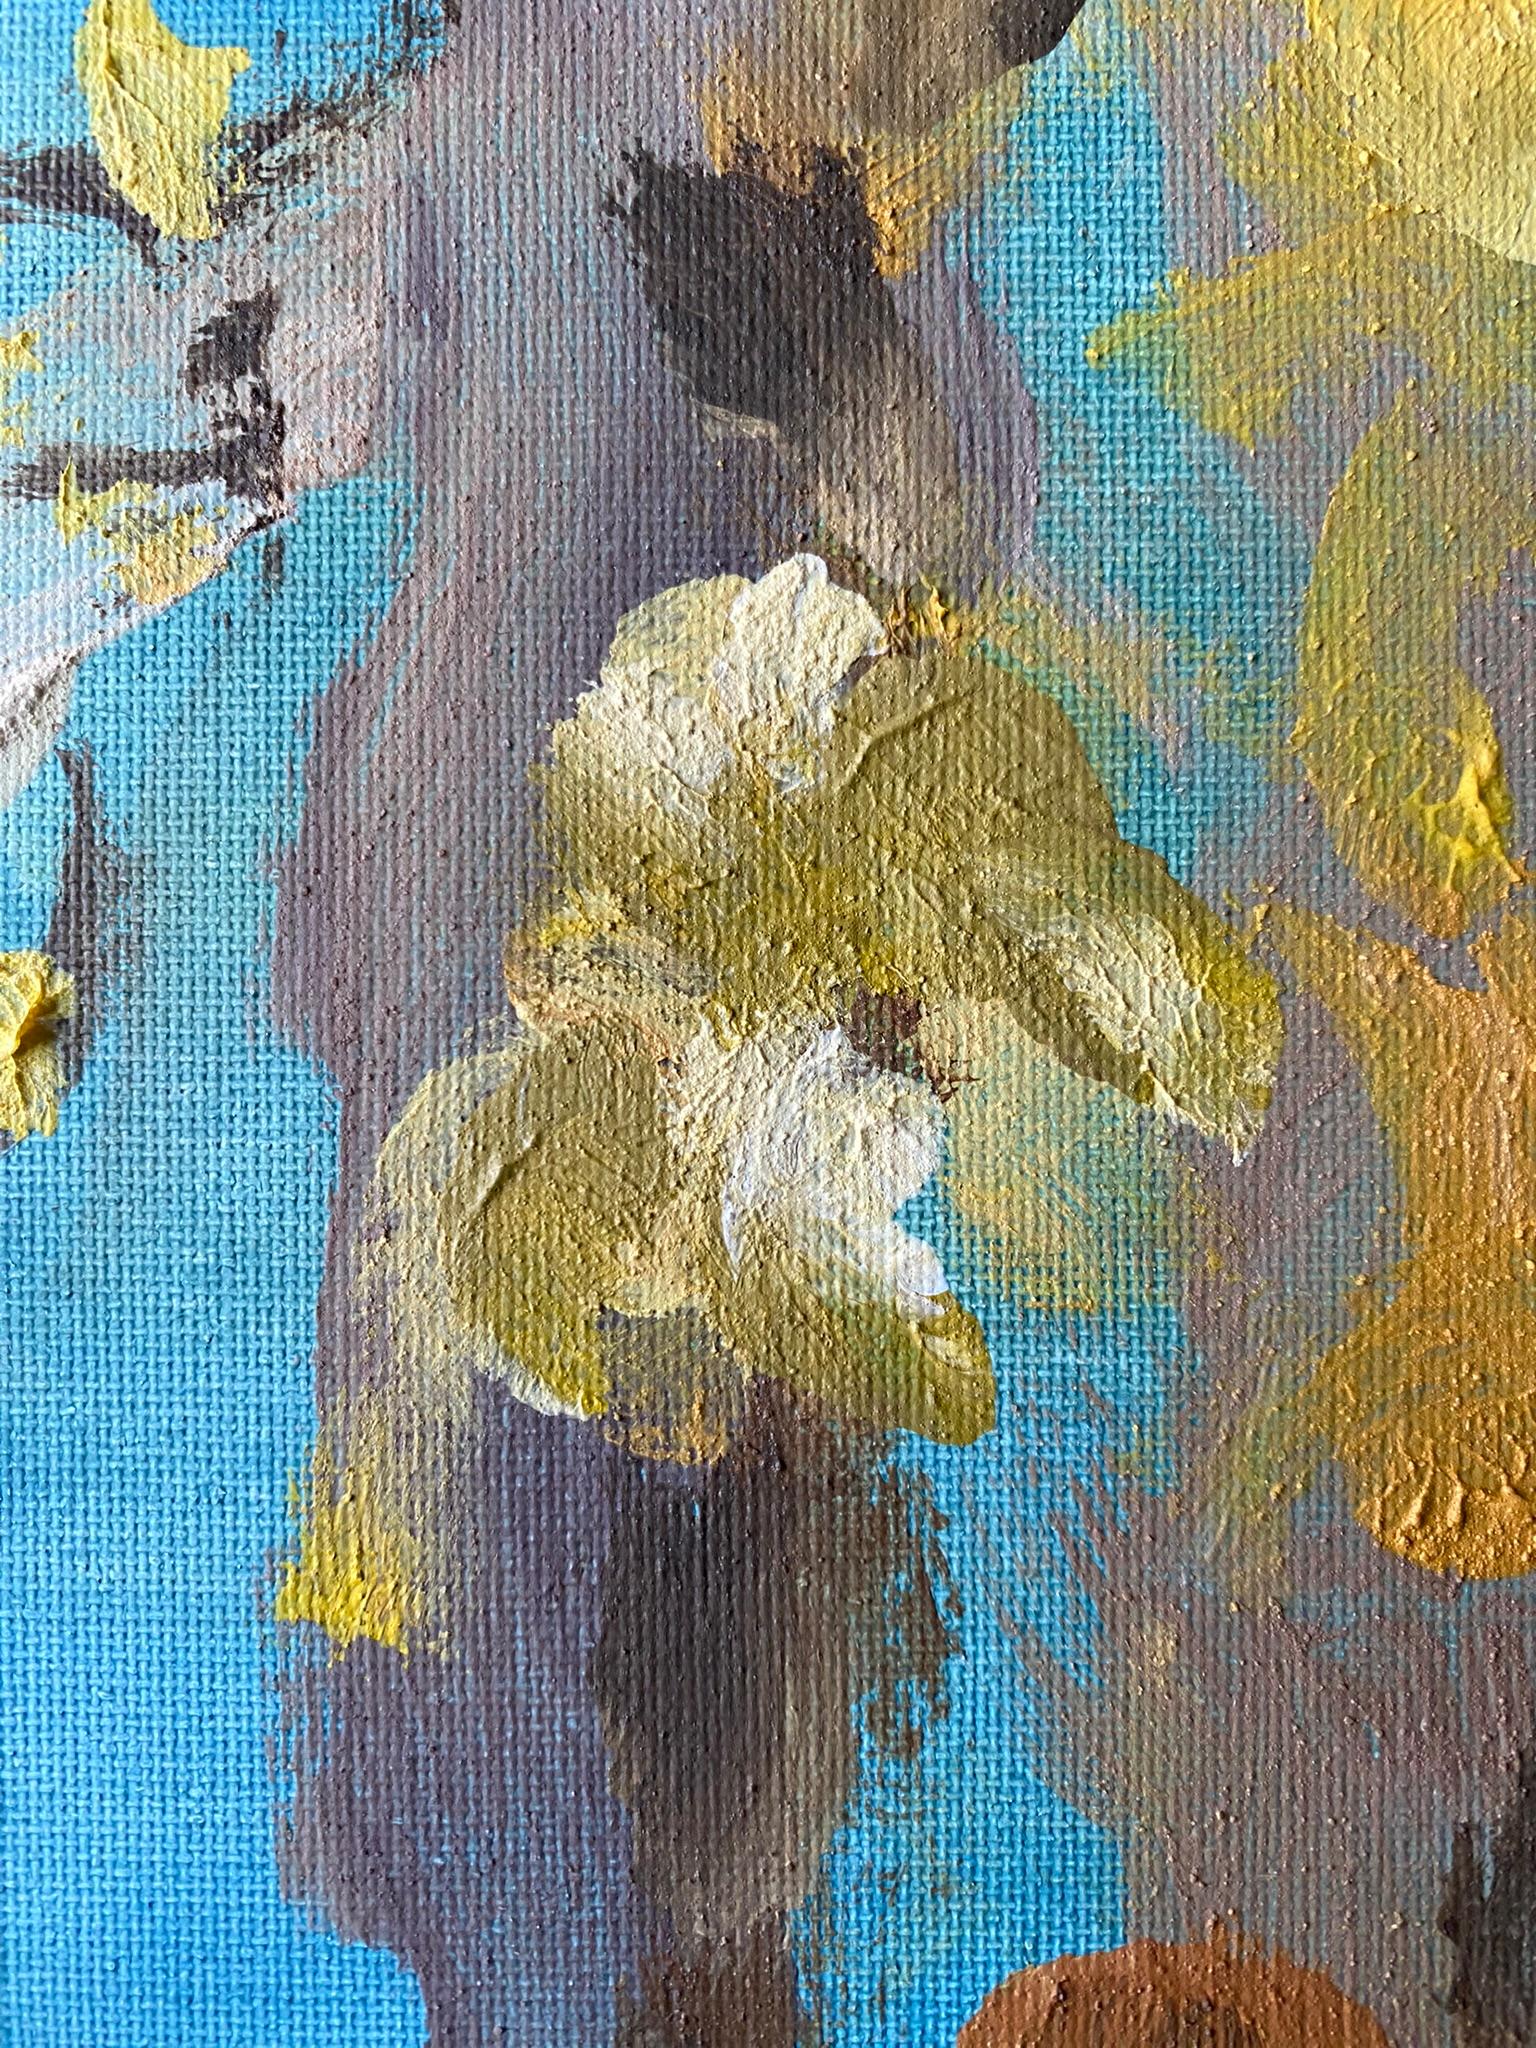 Original-Magnolias-Memory Landscape-UK Awarded Artist-oil on canvas board-Spring For Sale 10